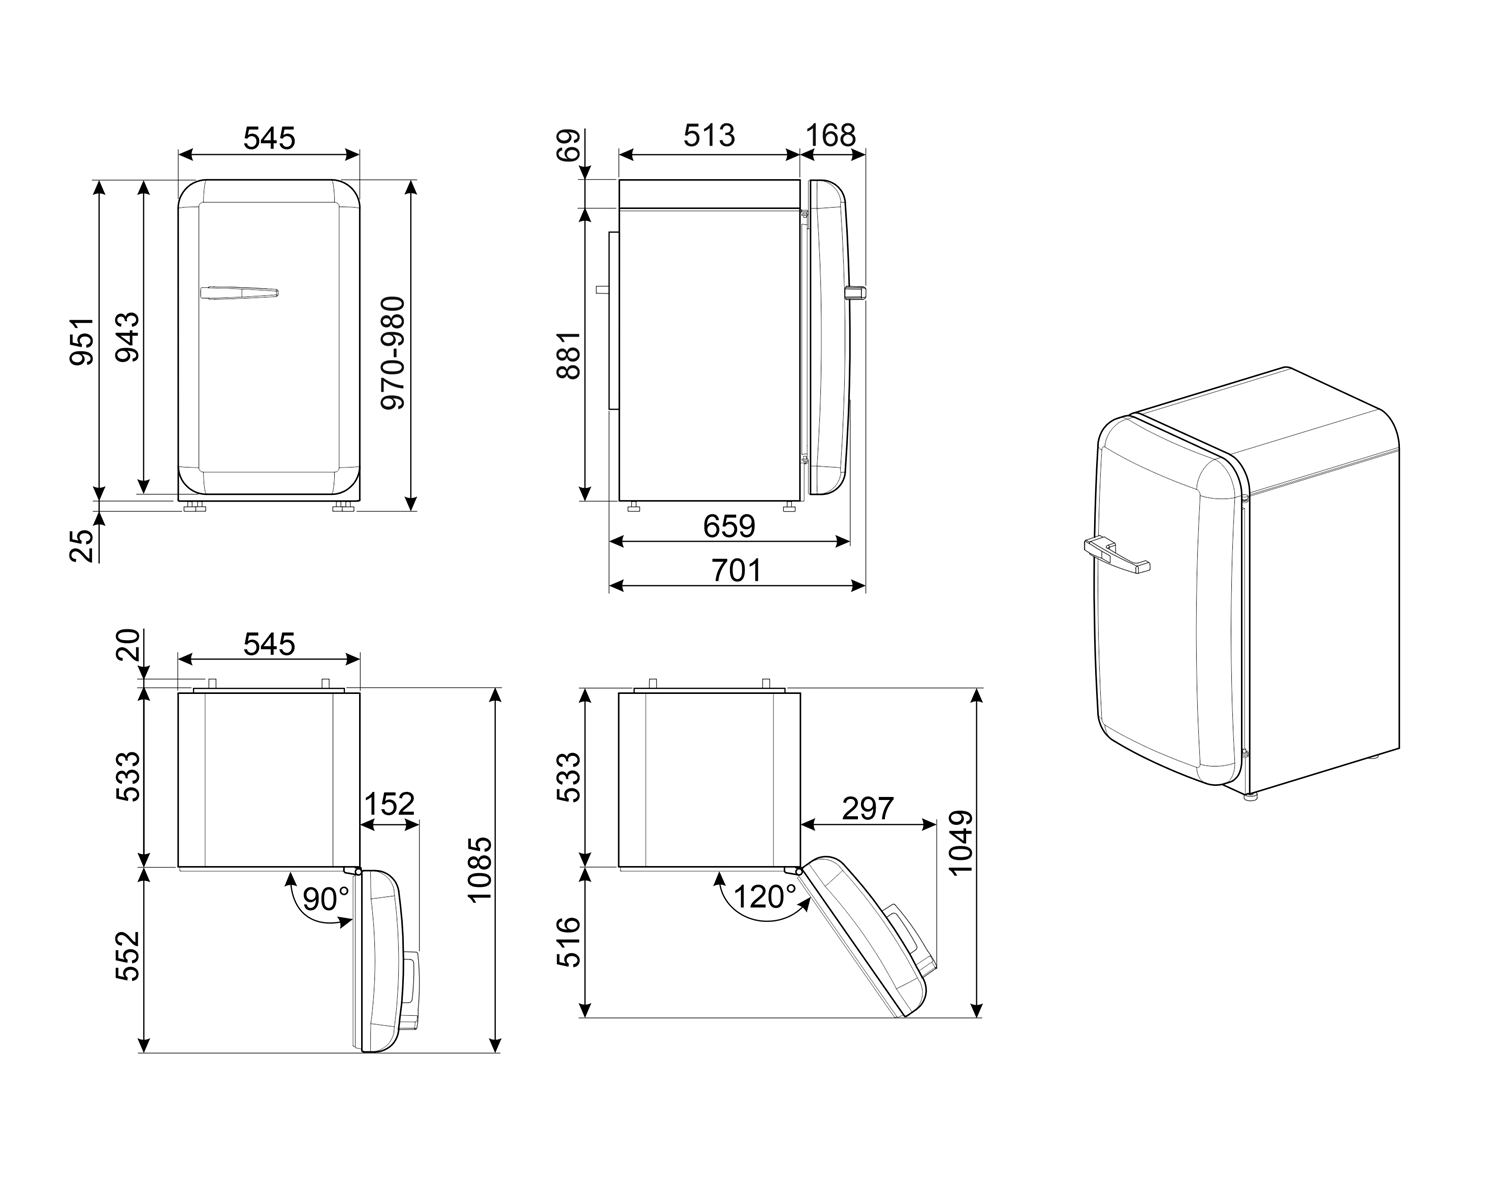 Maattekening SMEG koelkast tafelmodel Union Jack FAB10RDUJ5